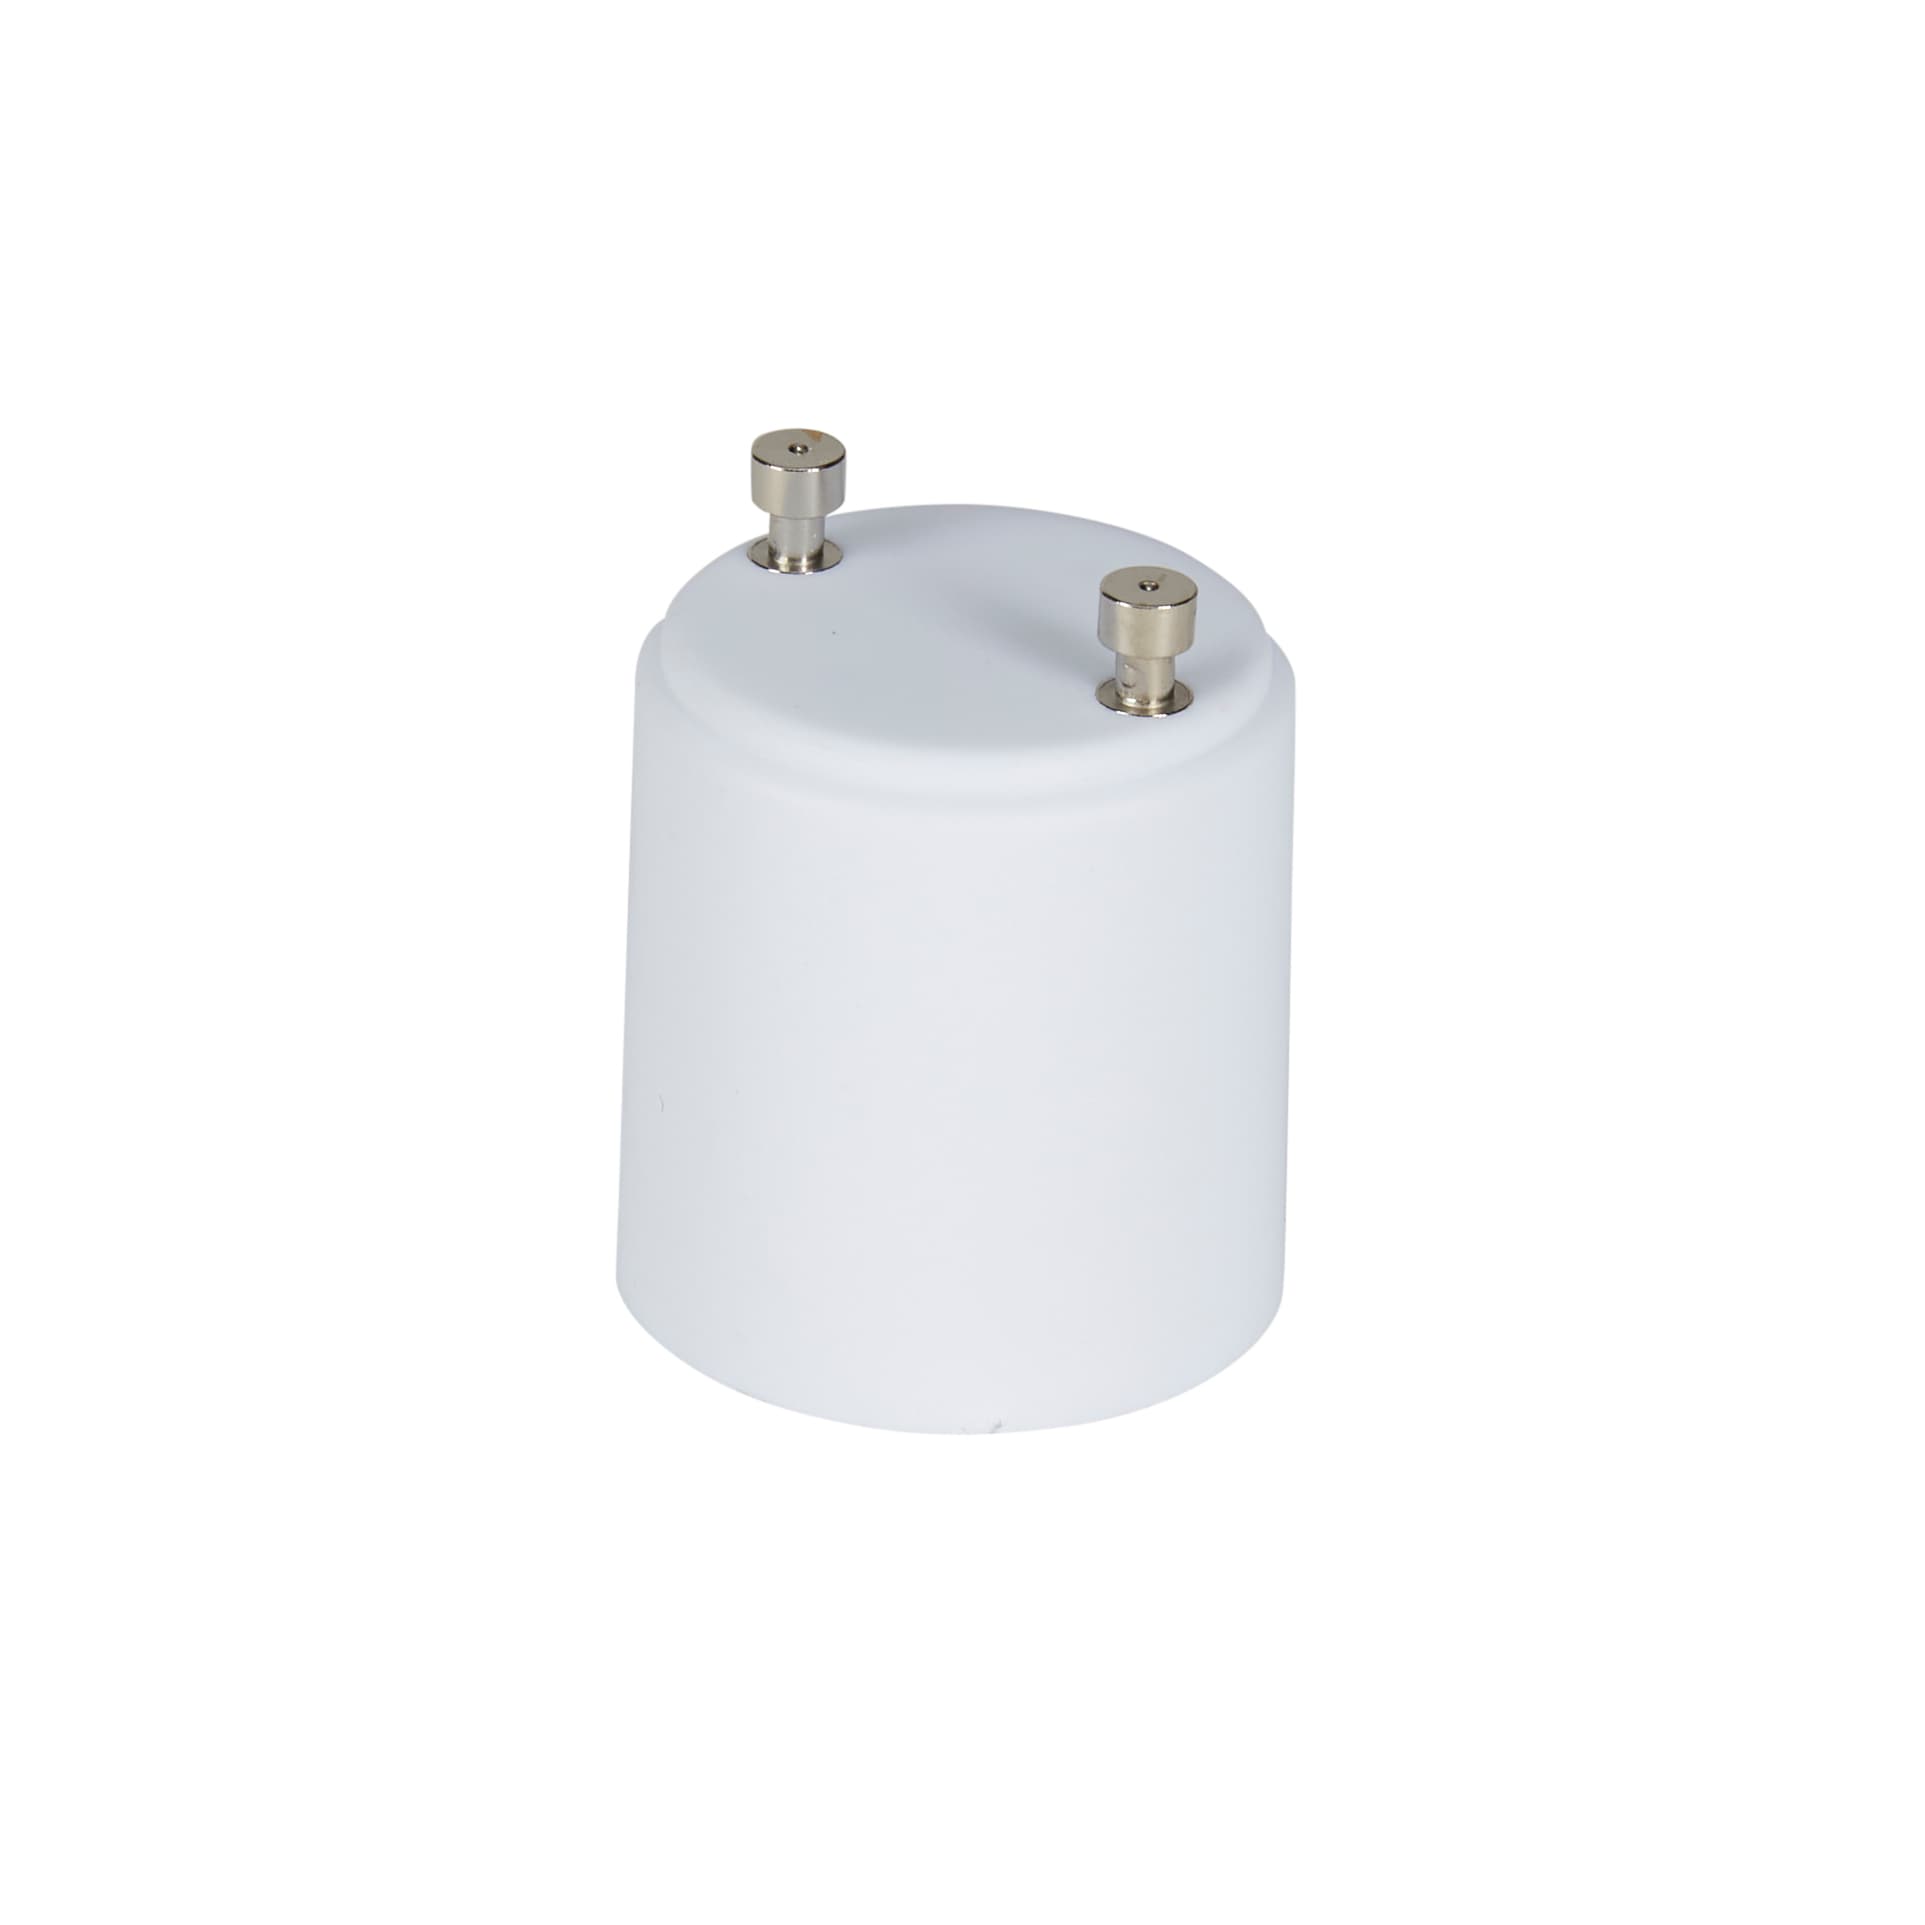 E11 To CA E12 Candelabra Base Socket LED Light Bulb Lamp Adapters Converters  xk 